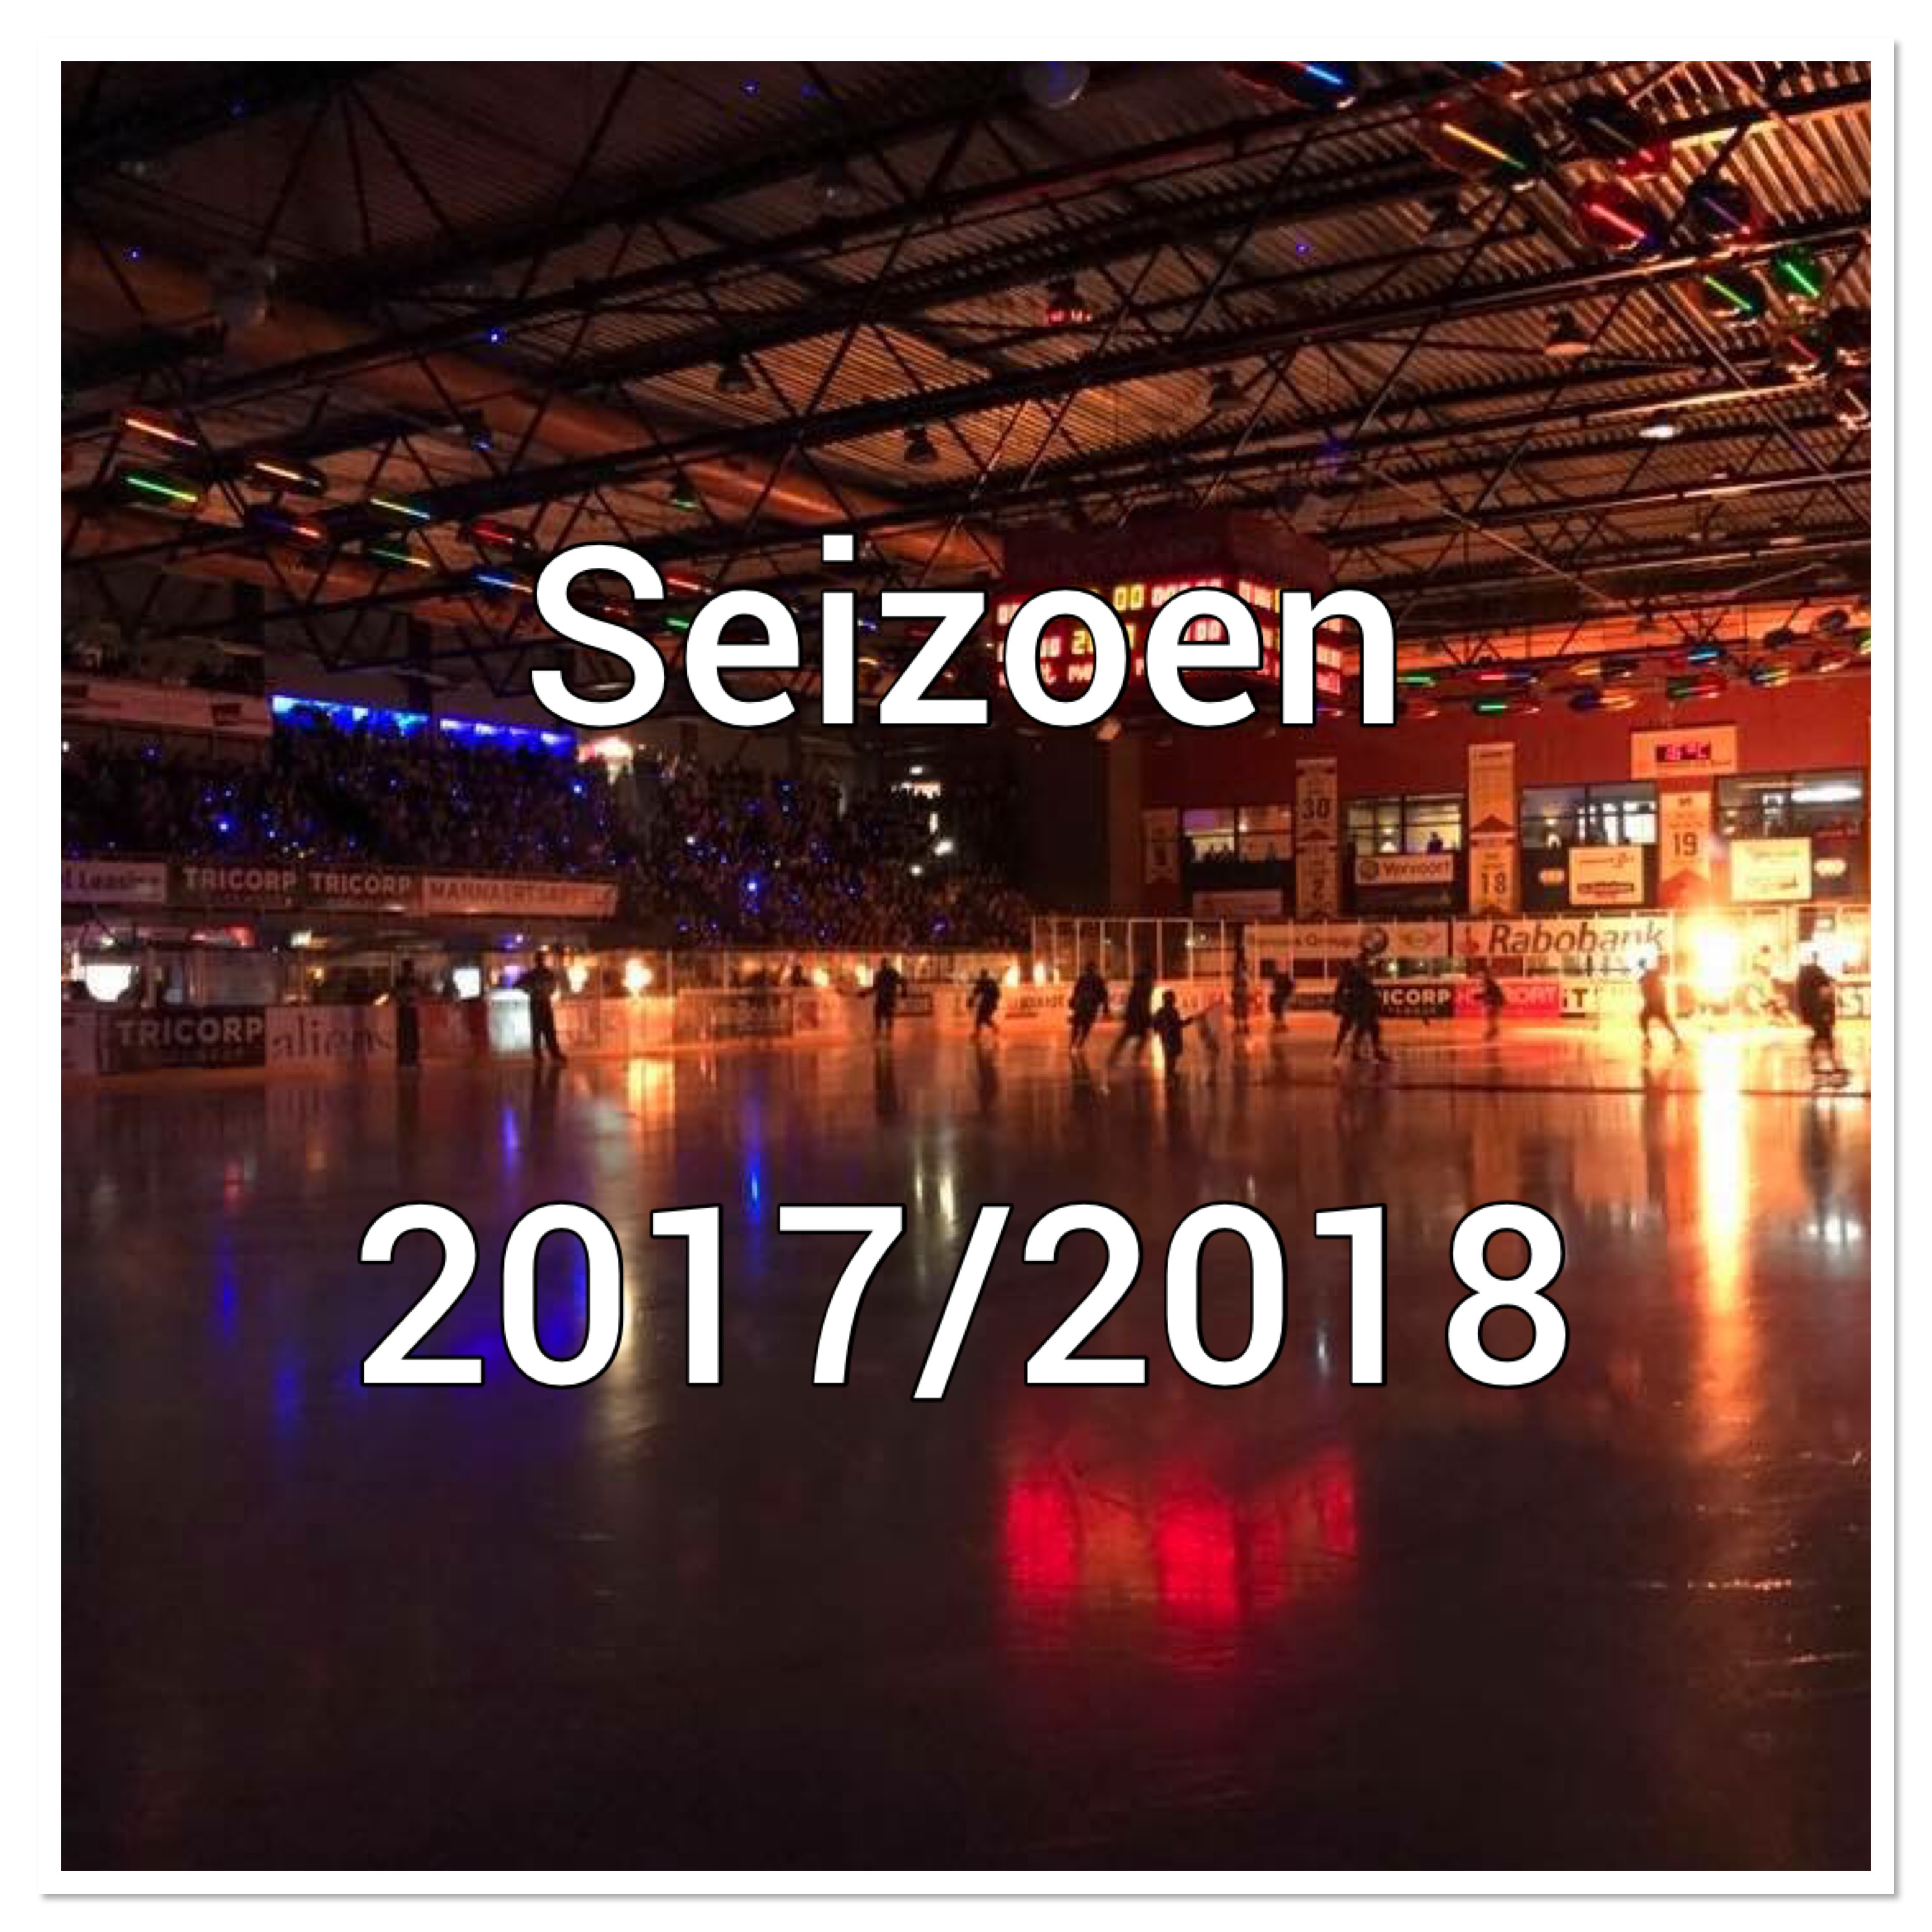 Startdatum van het seizoen 2017/2018 vastgesteld